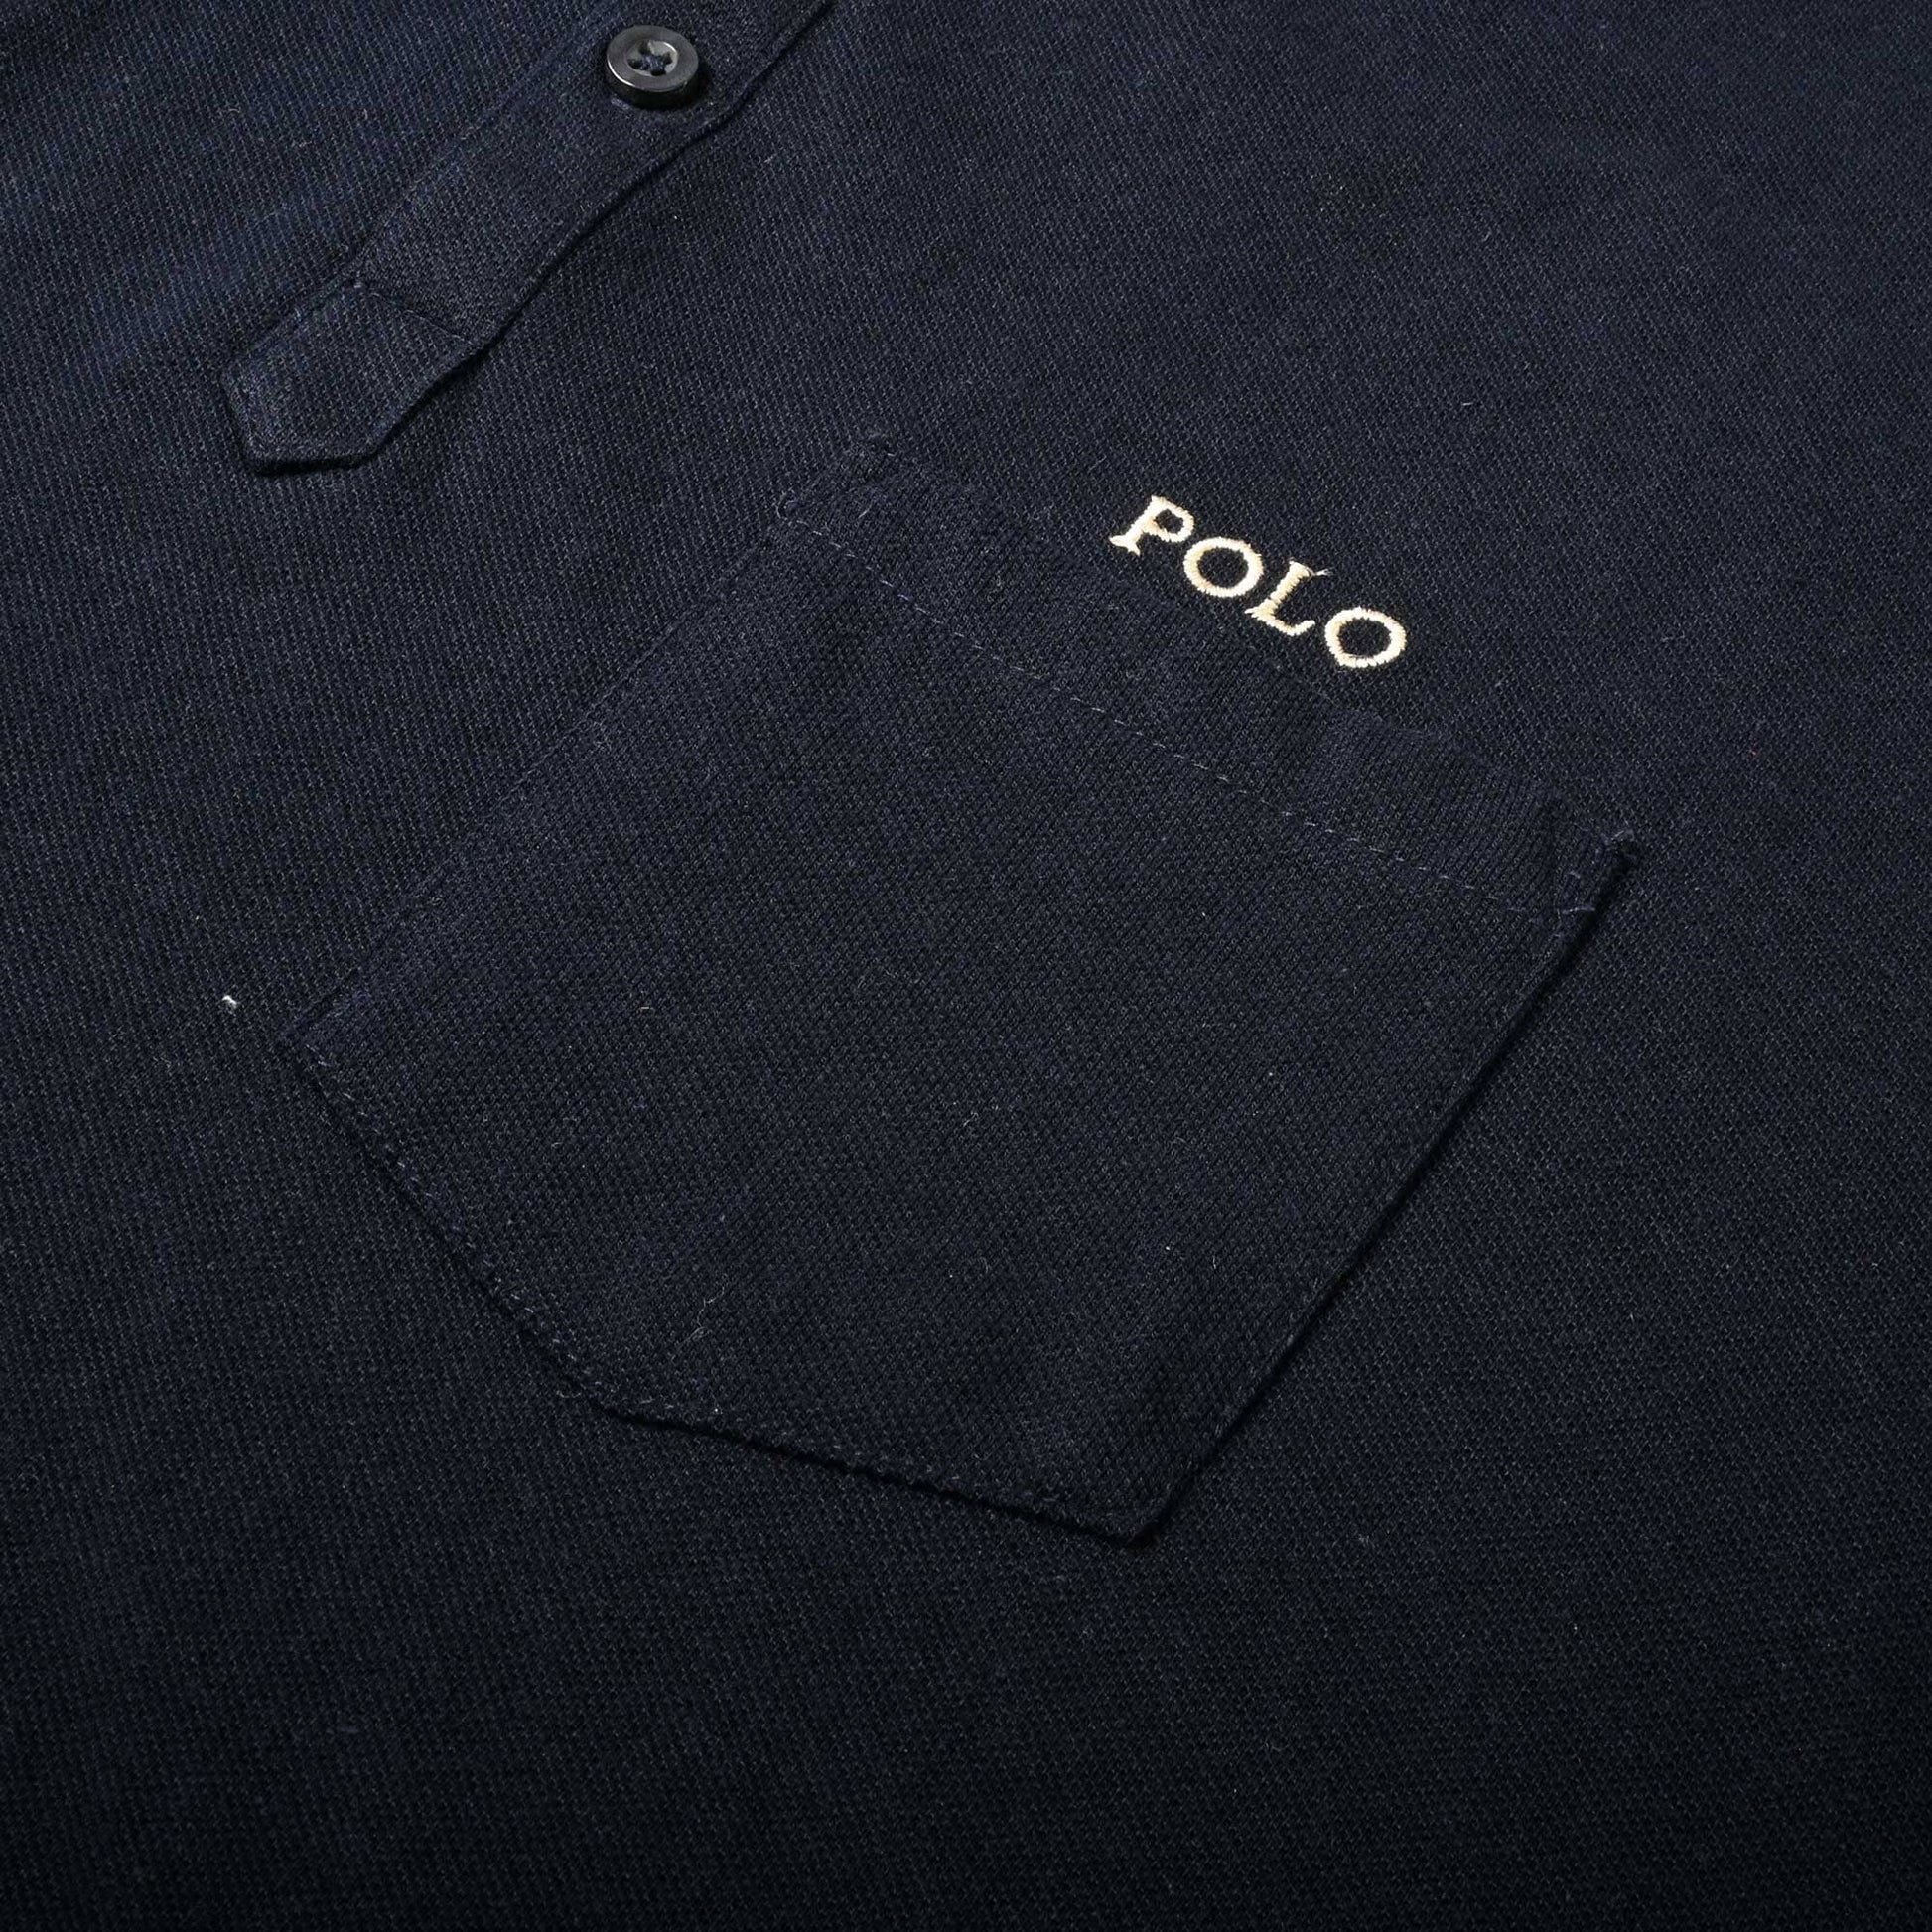 Polo Republica Men's PRC & Polo Embroidered Pocket Polo Shirt Men's Polo Shirt Polo Republica 